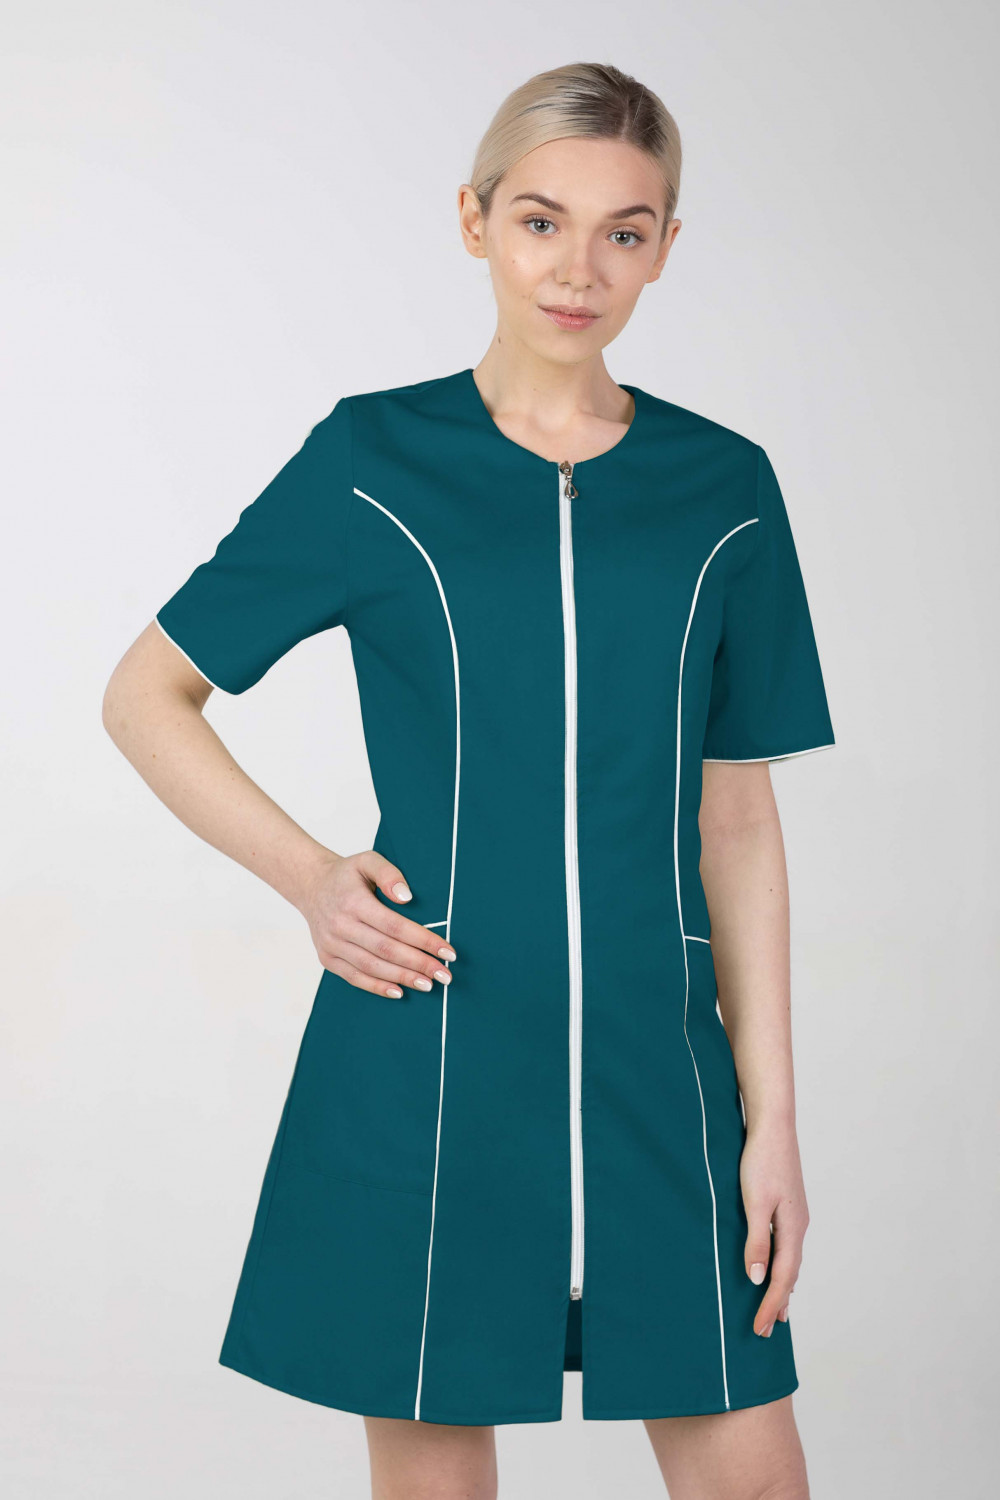 M-173C Fartuch damski medyczny sukienka medyczna na zamek kolor ciemny zielony